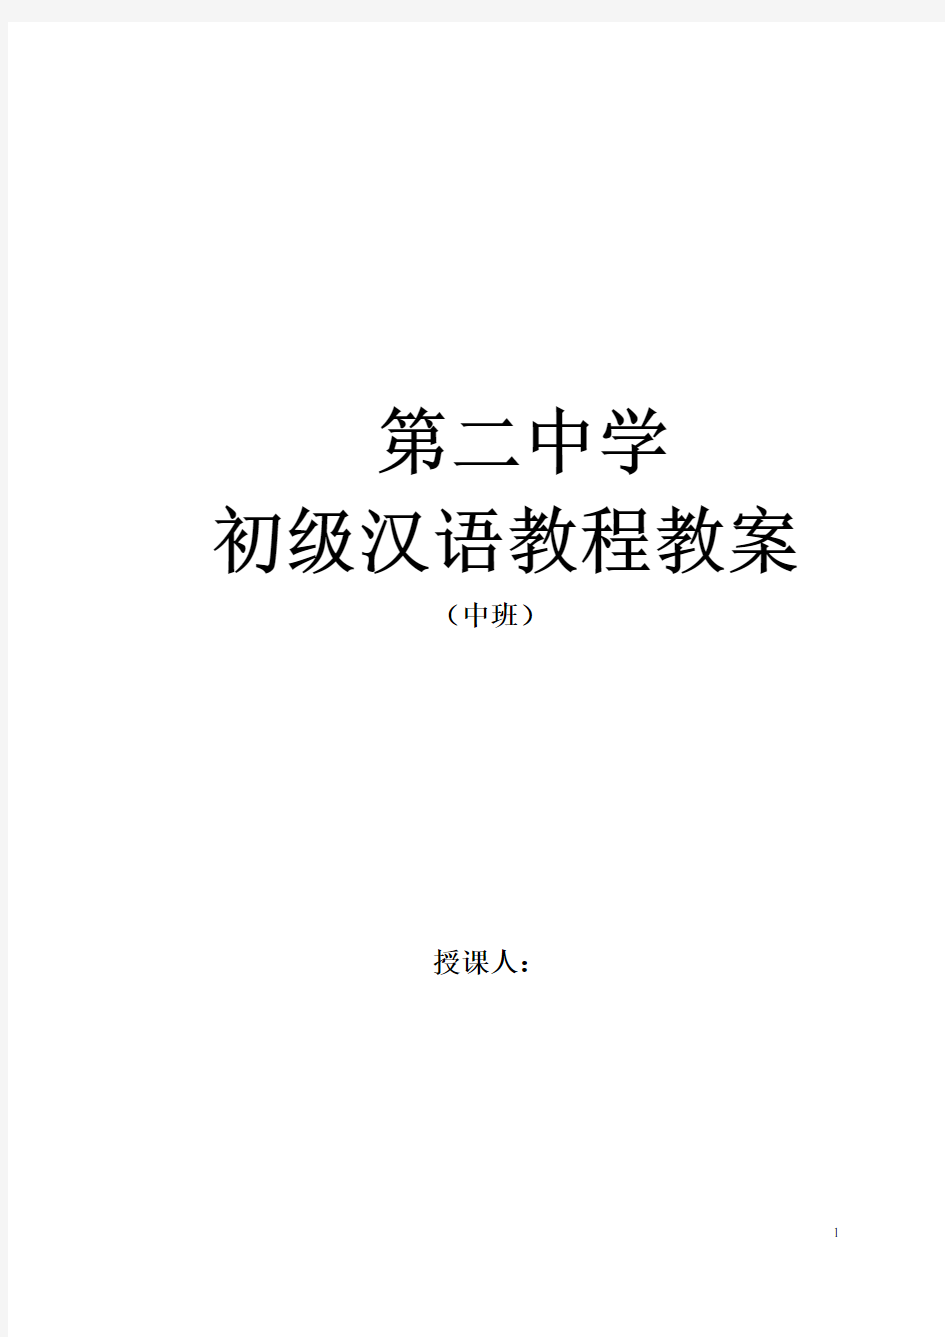 《初级汉语教程》第二册教案